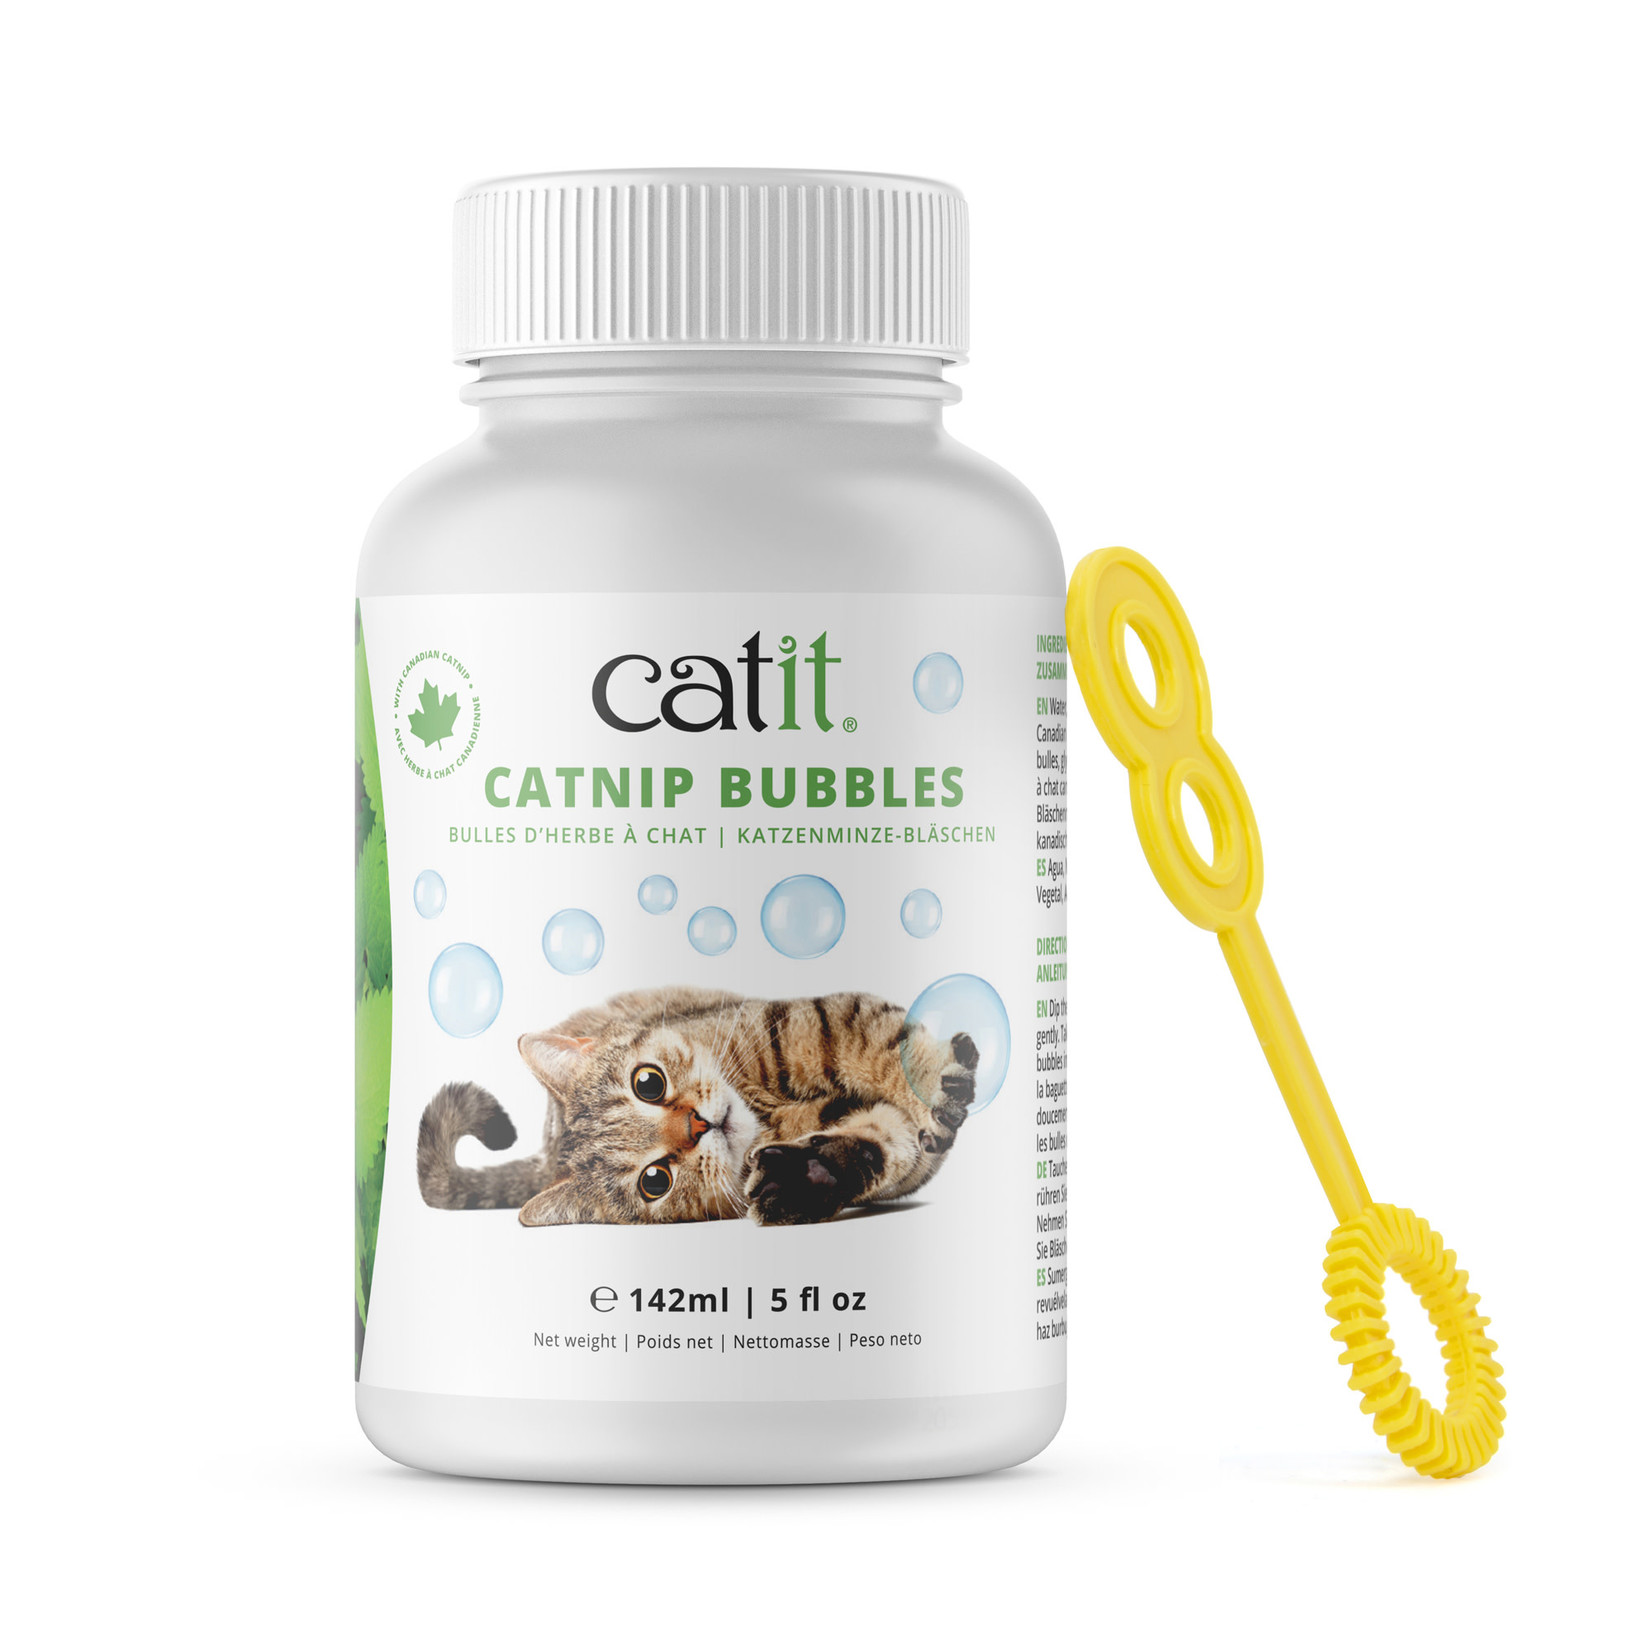 CAT IT Catit Catnip Bubbles - 142 ml (5 oz) jar